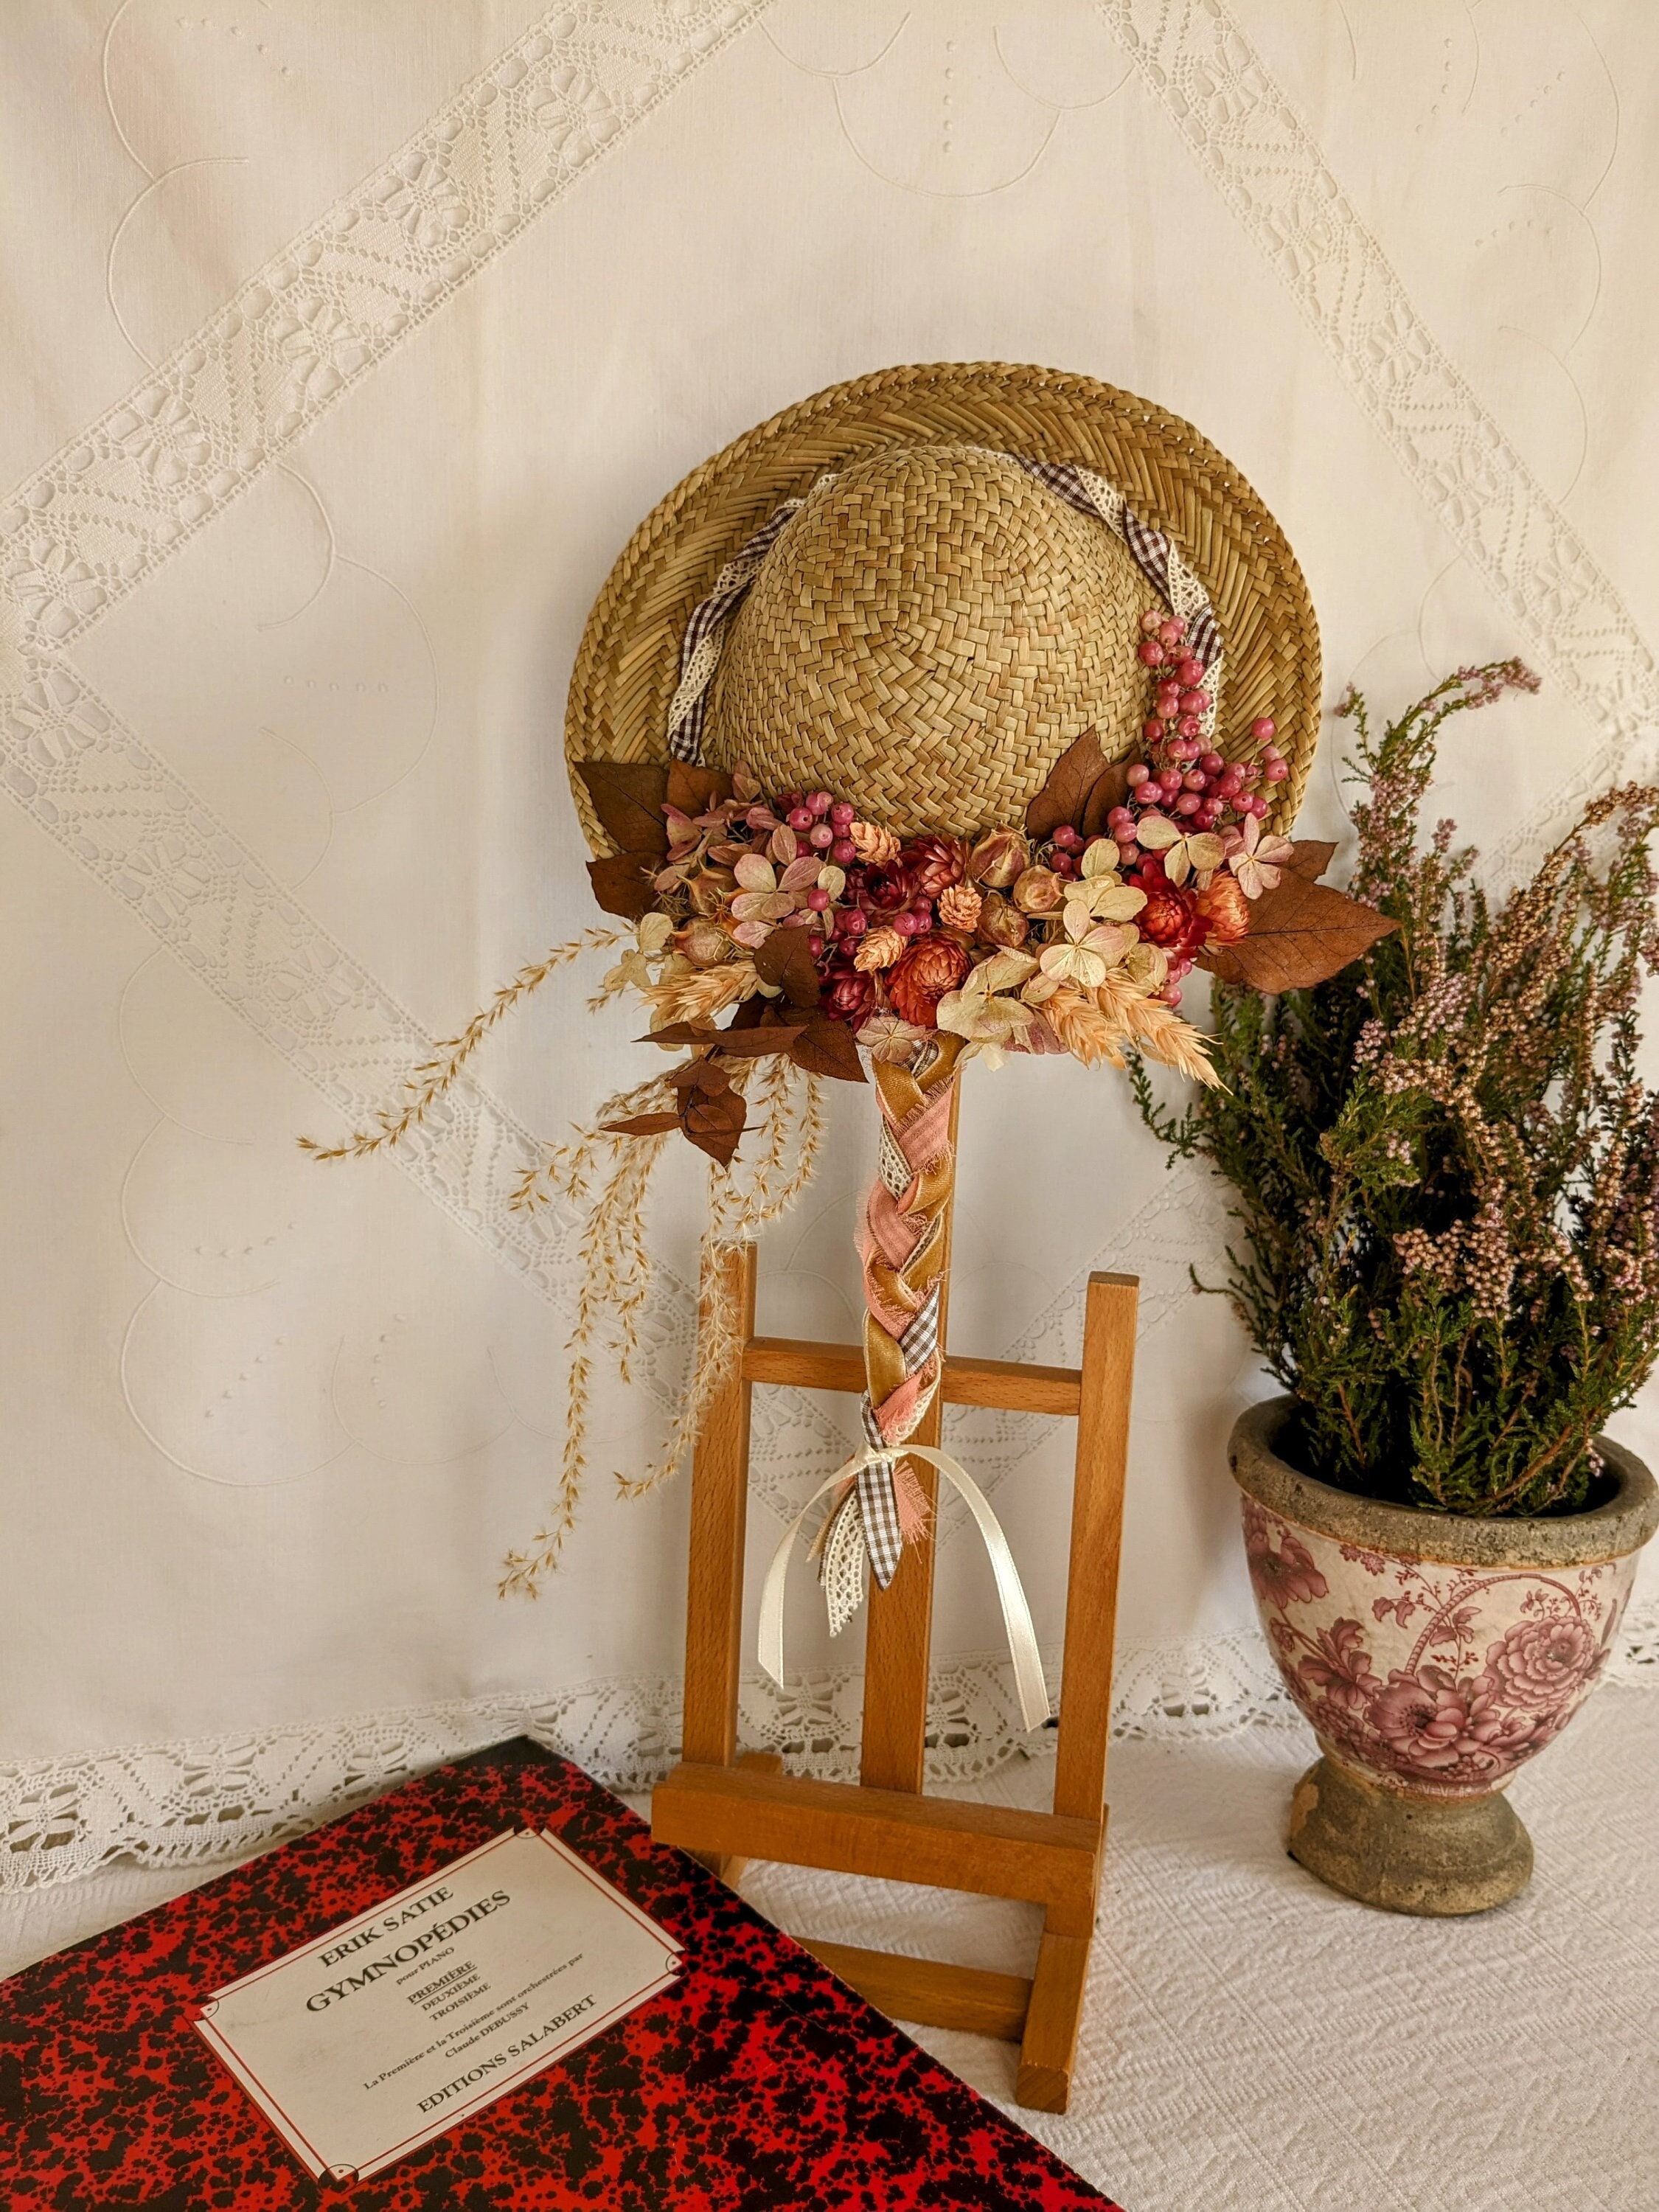 Chapeau de paille fleuri, Fleurs séchées, Origine atelier floral